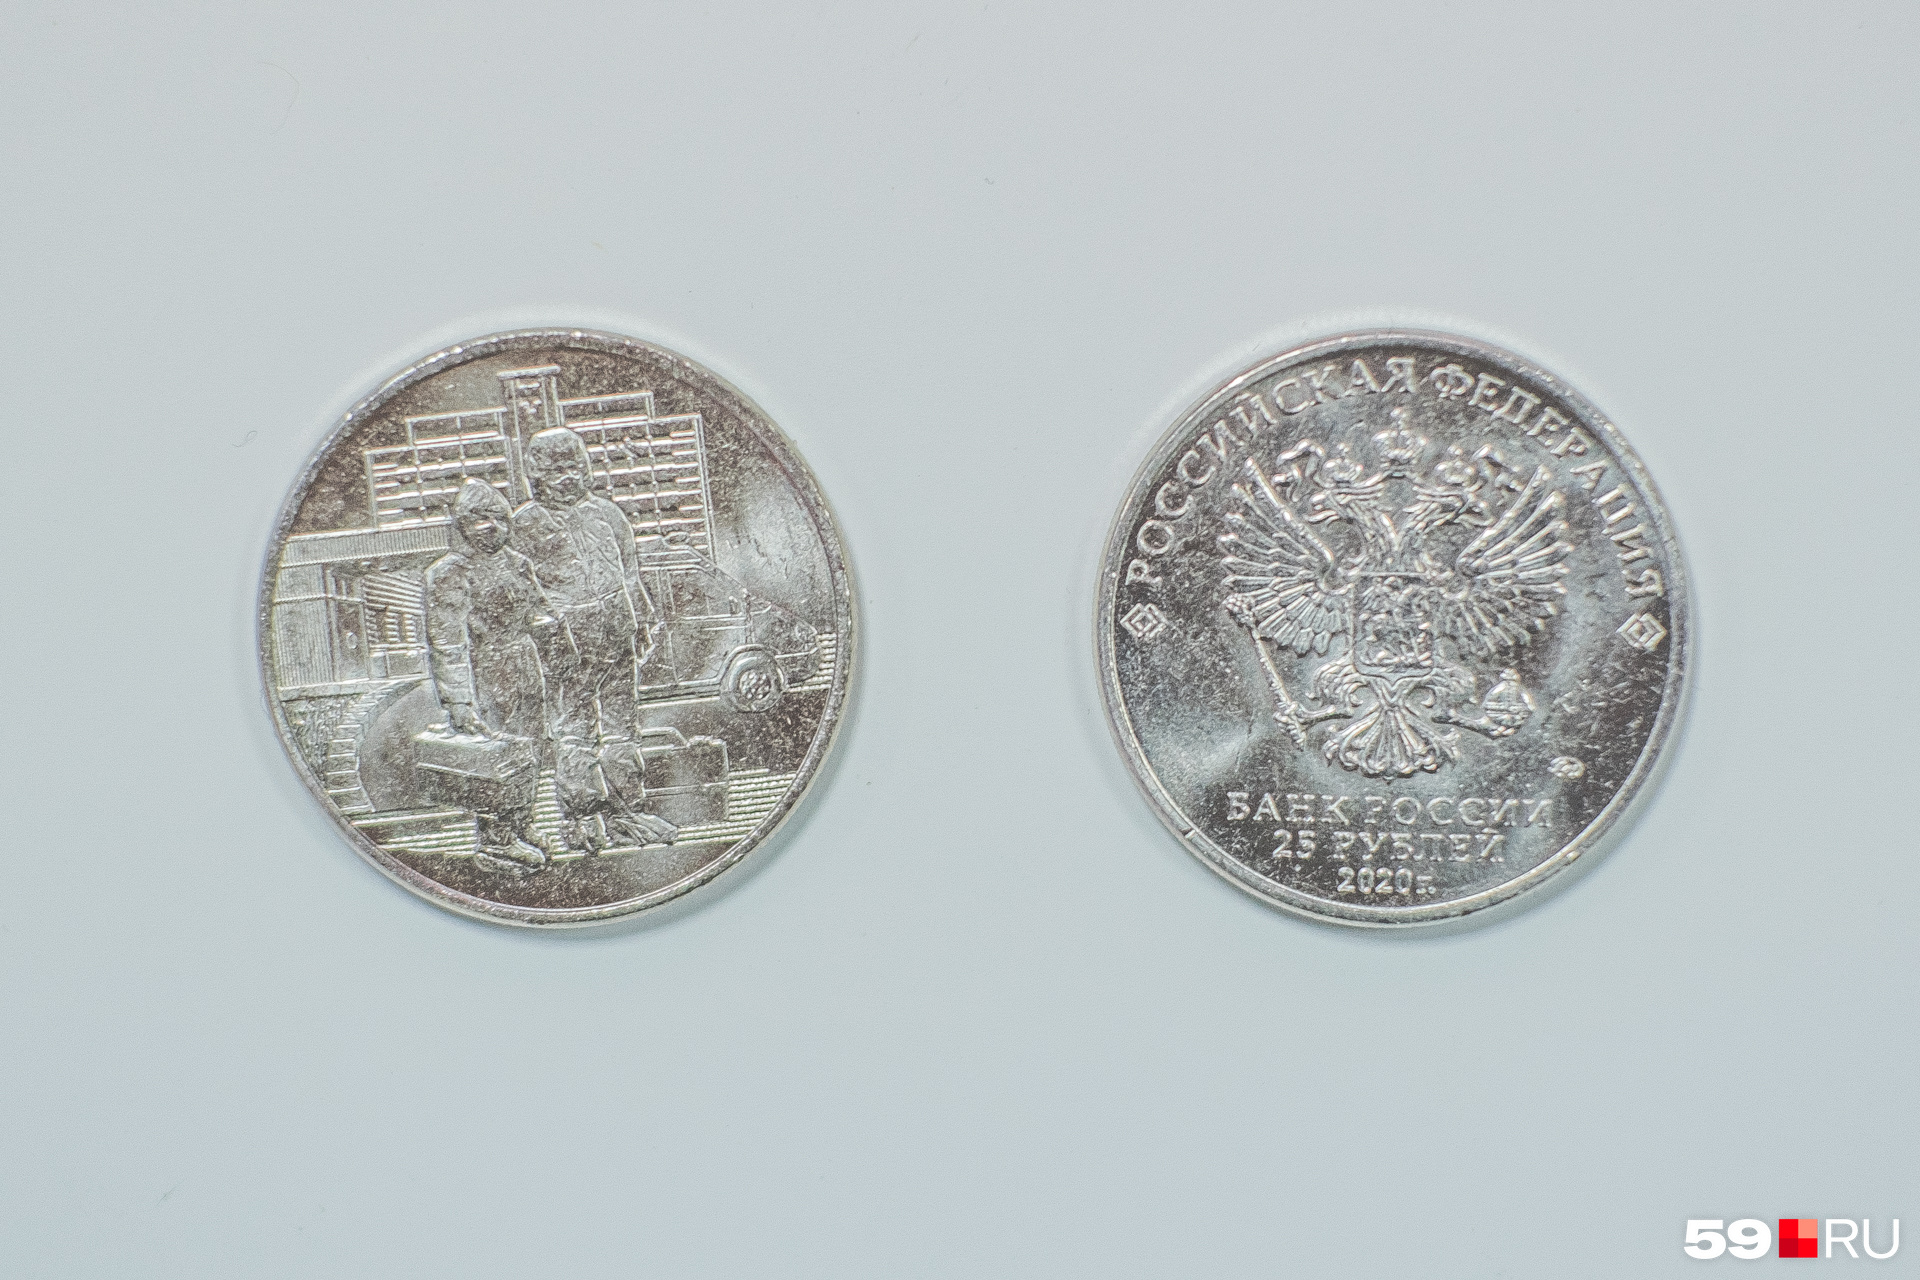 Вторая сторона монеты выглядит привычно: с гербом и датой выпуска 